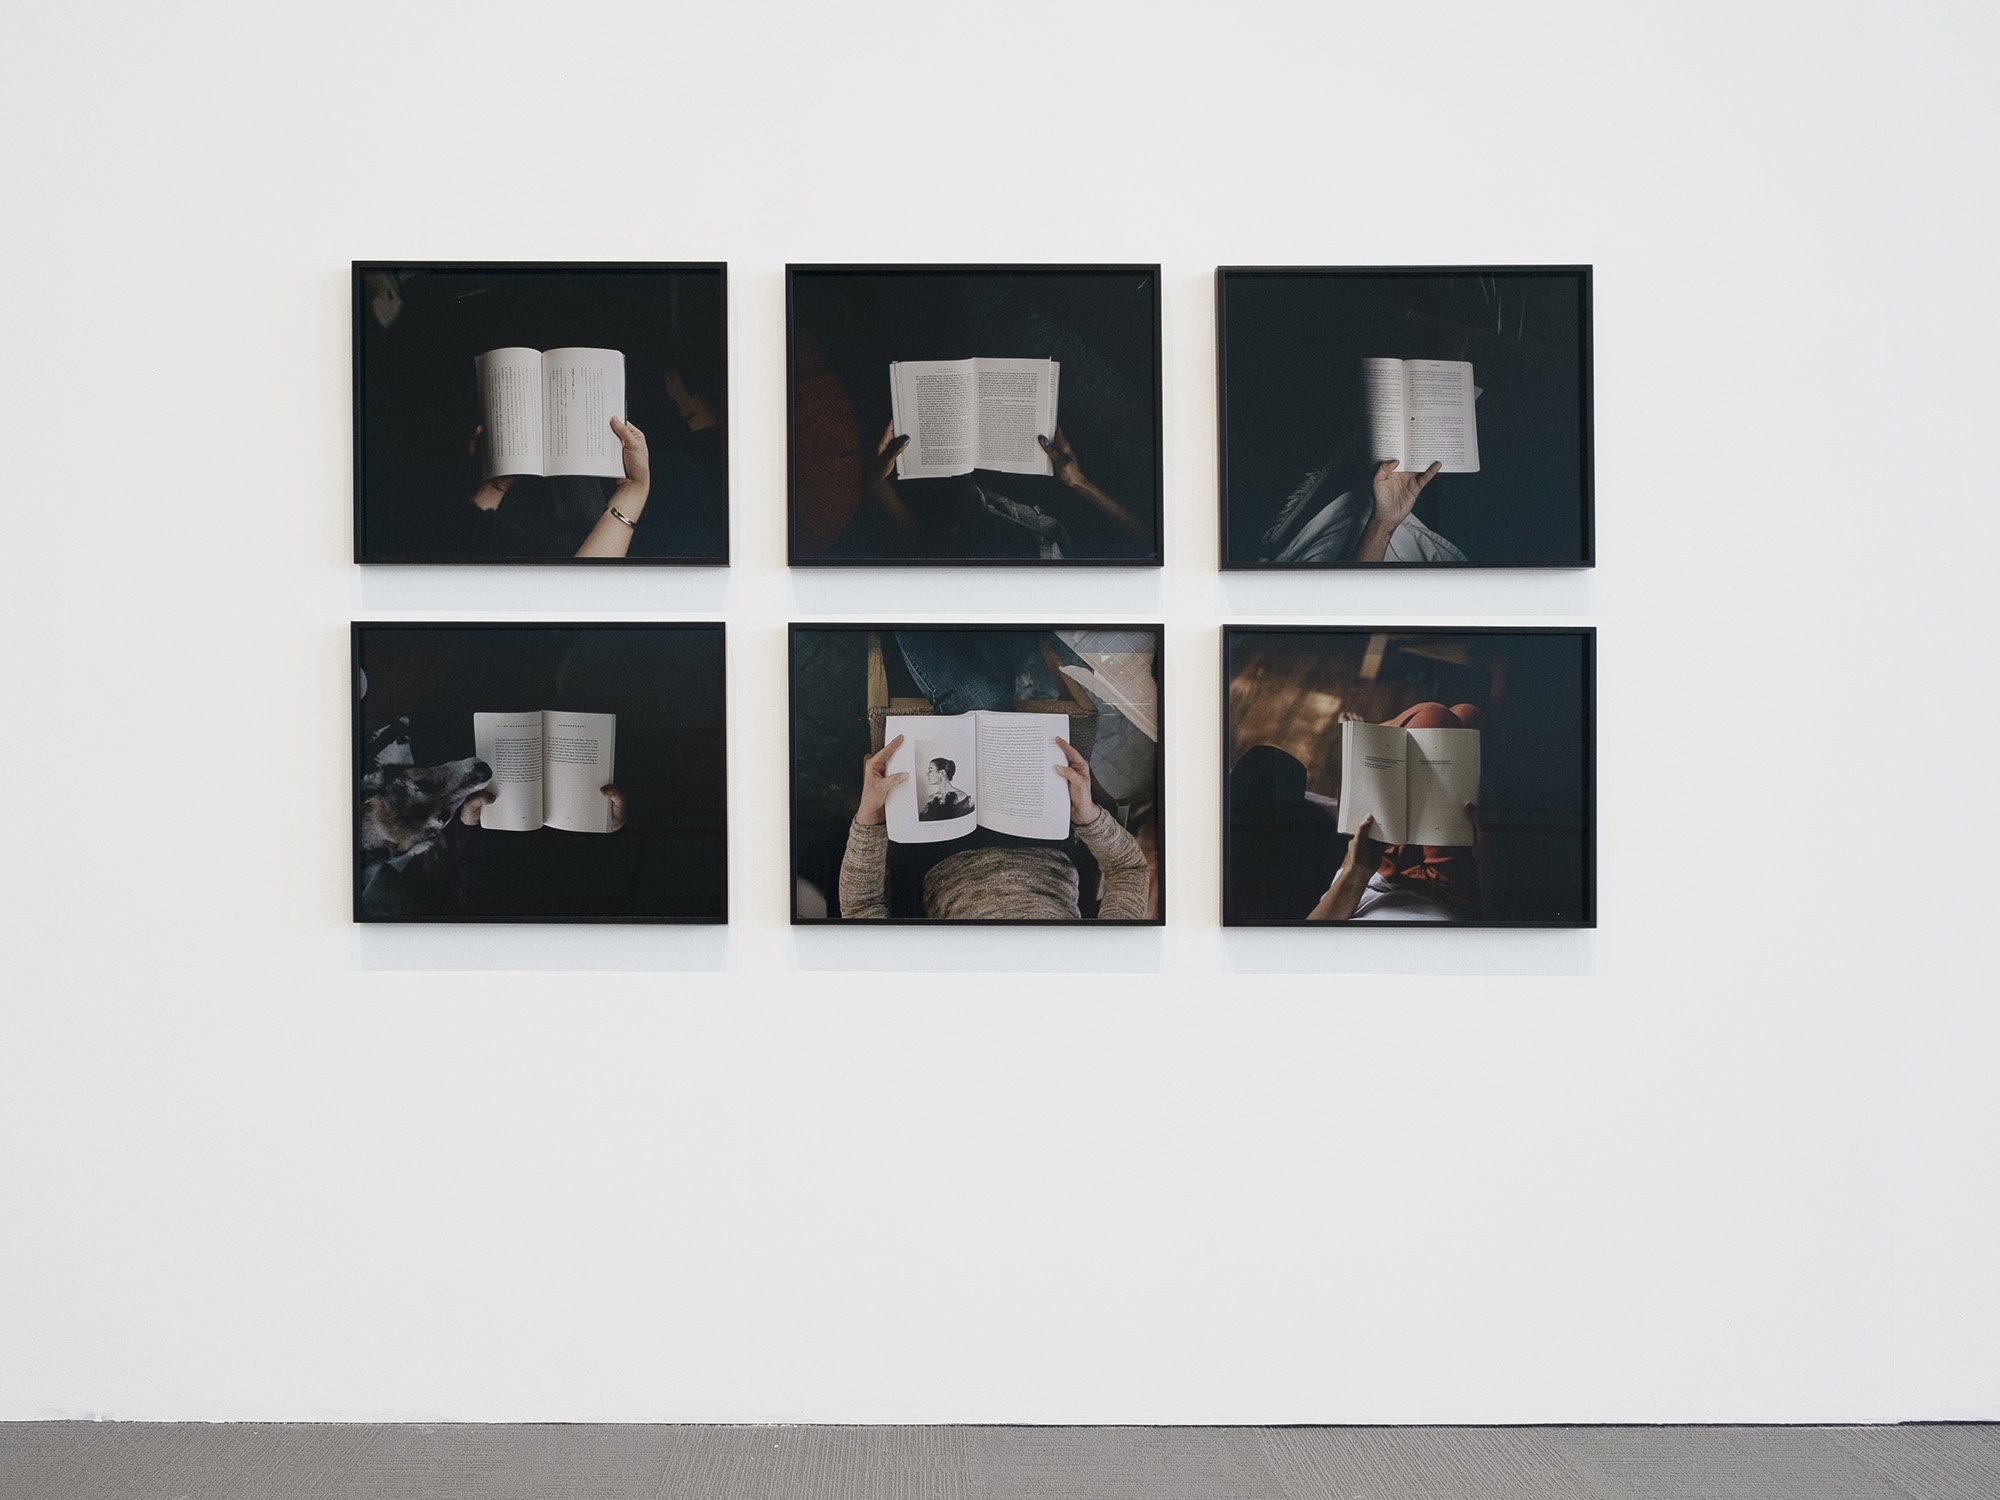 Carrie Schneider, Rapt, 2019, installation view